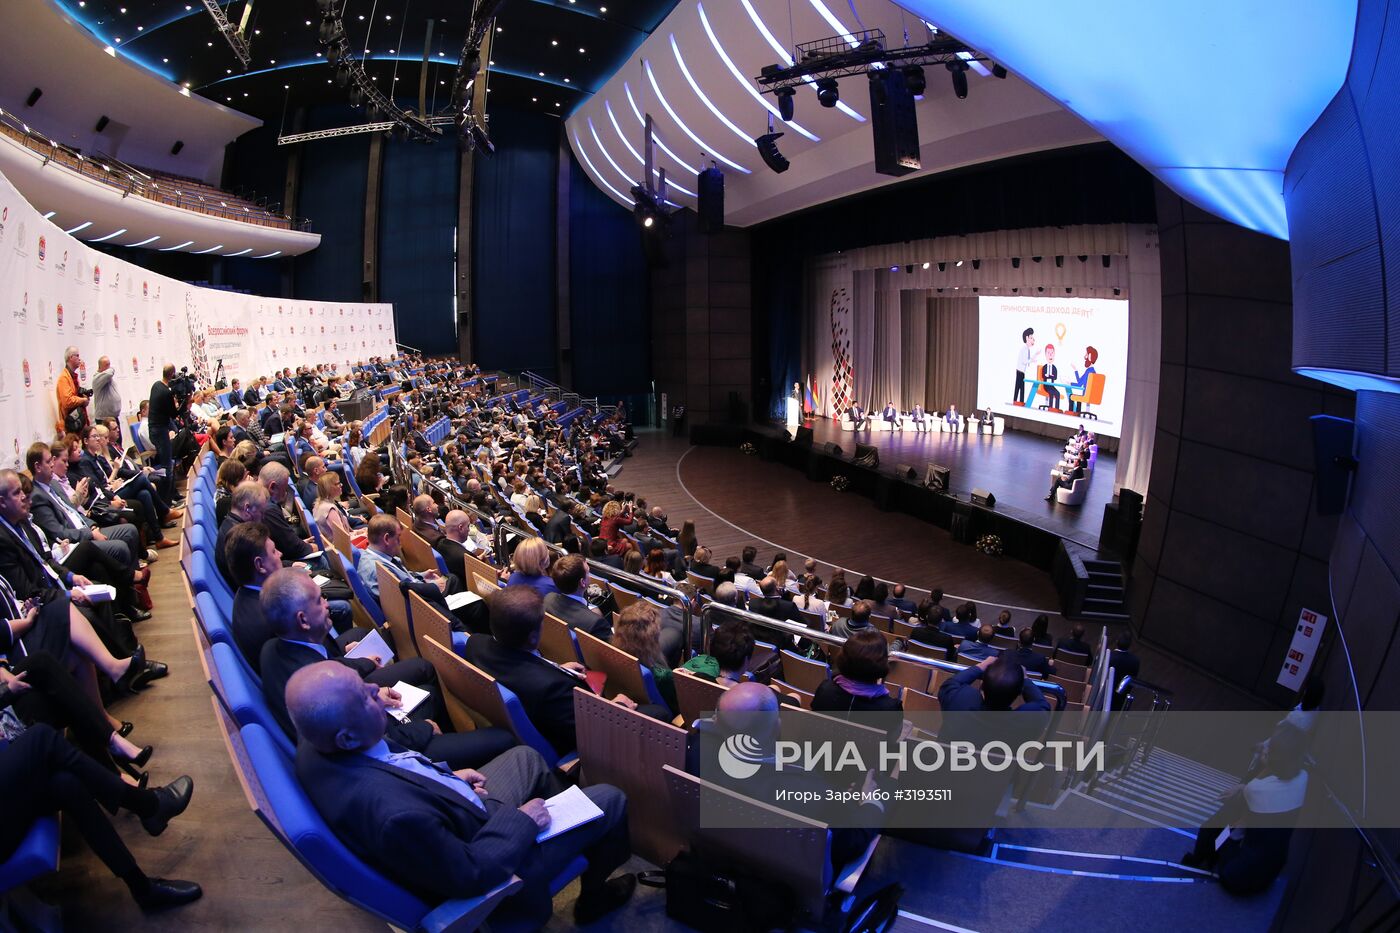 Всероссийский форум центров госуслуг